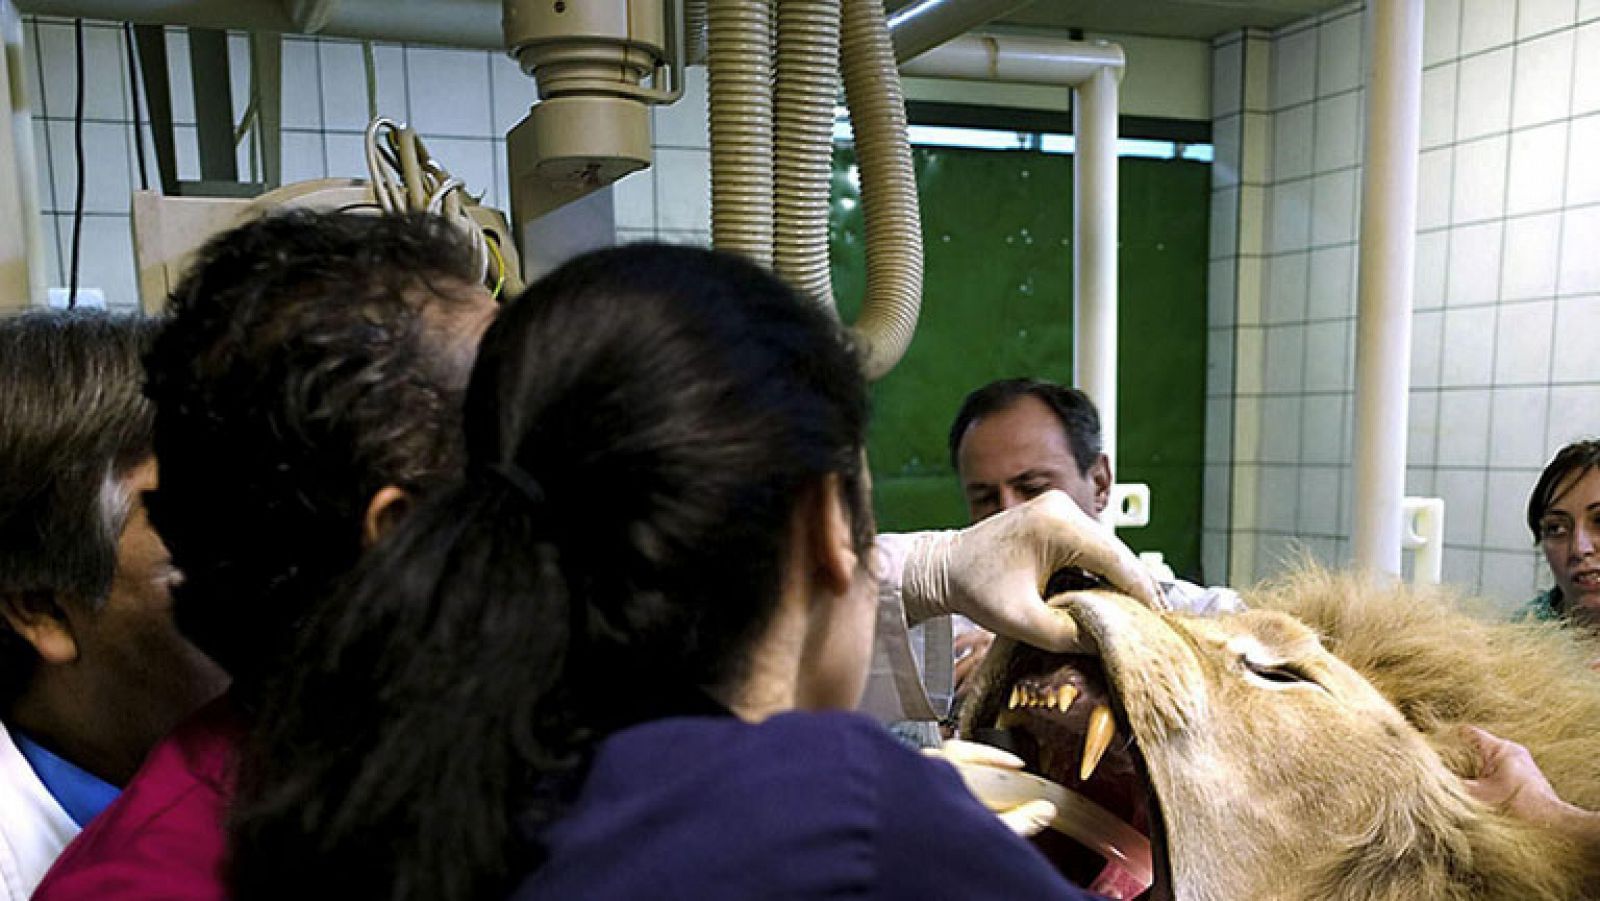  Ayer les mostramos la operación que un equipo de cirujanos de la Universidad Complutense de Madrid había realizado a Boiki, un león de 218 kilos. Hoy hemos hablado con el jefe de los cirujanos que nos ha contado las dificultades que se encontraron para hacer la intervención